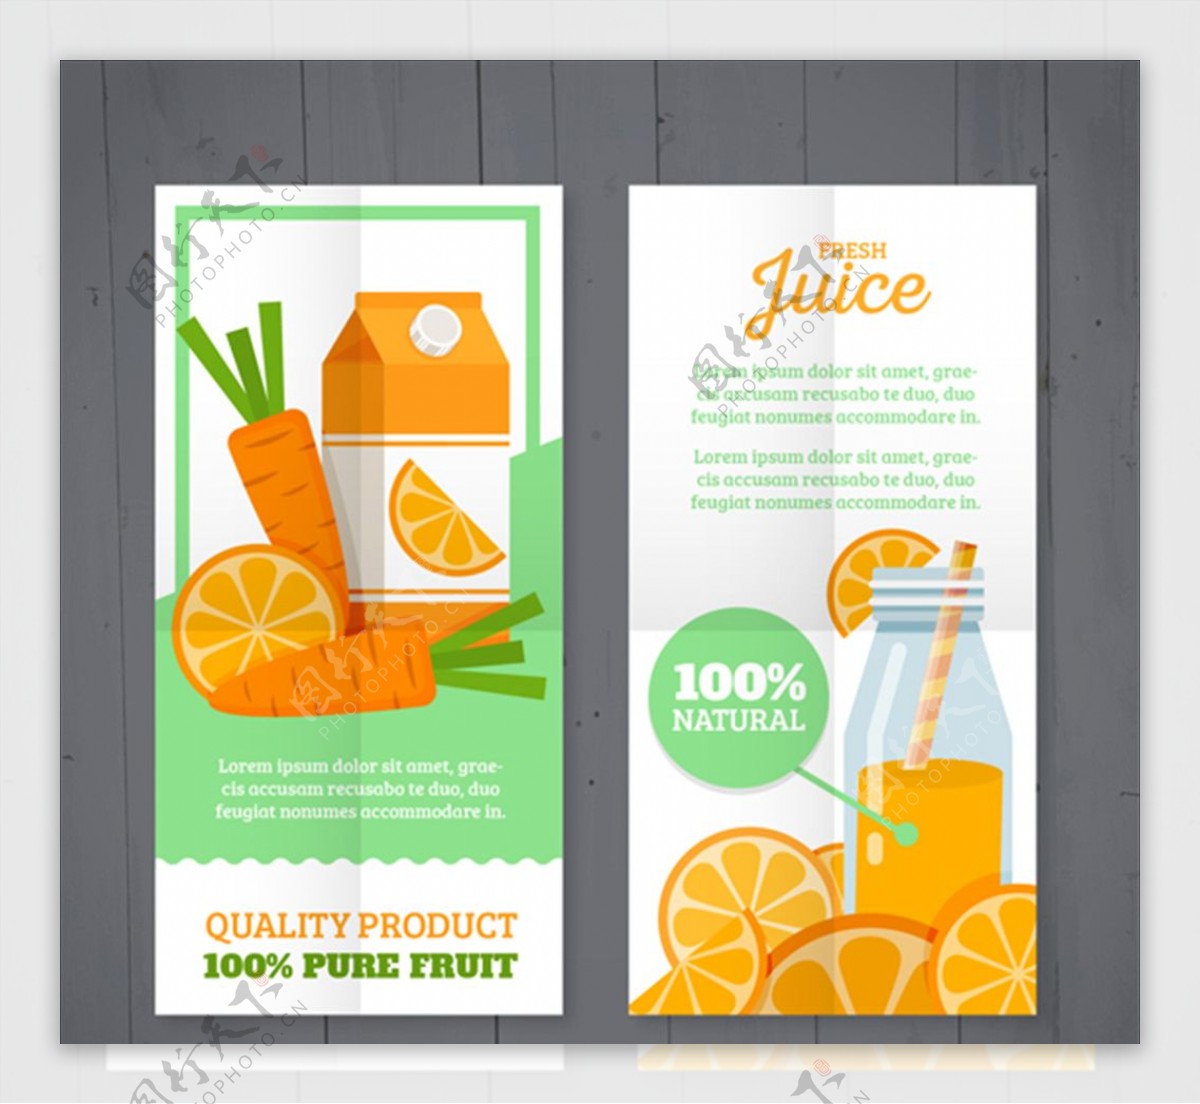 橙汁和胡萝卜汁海报